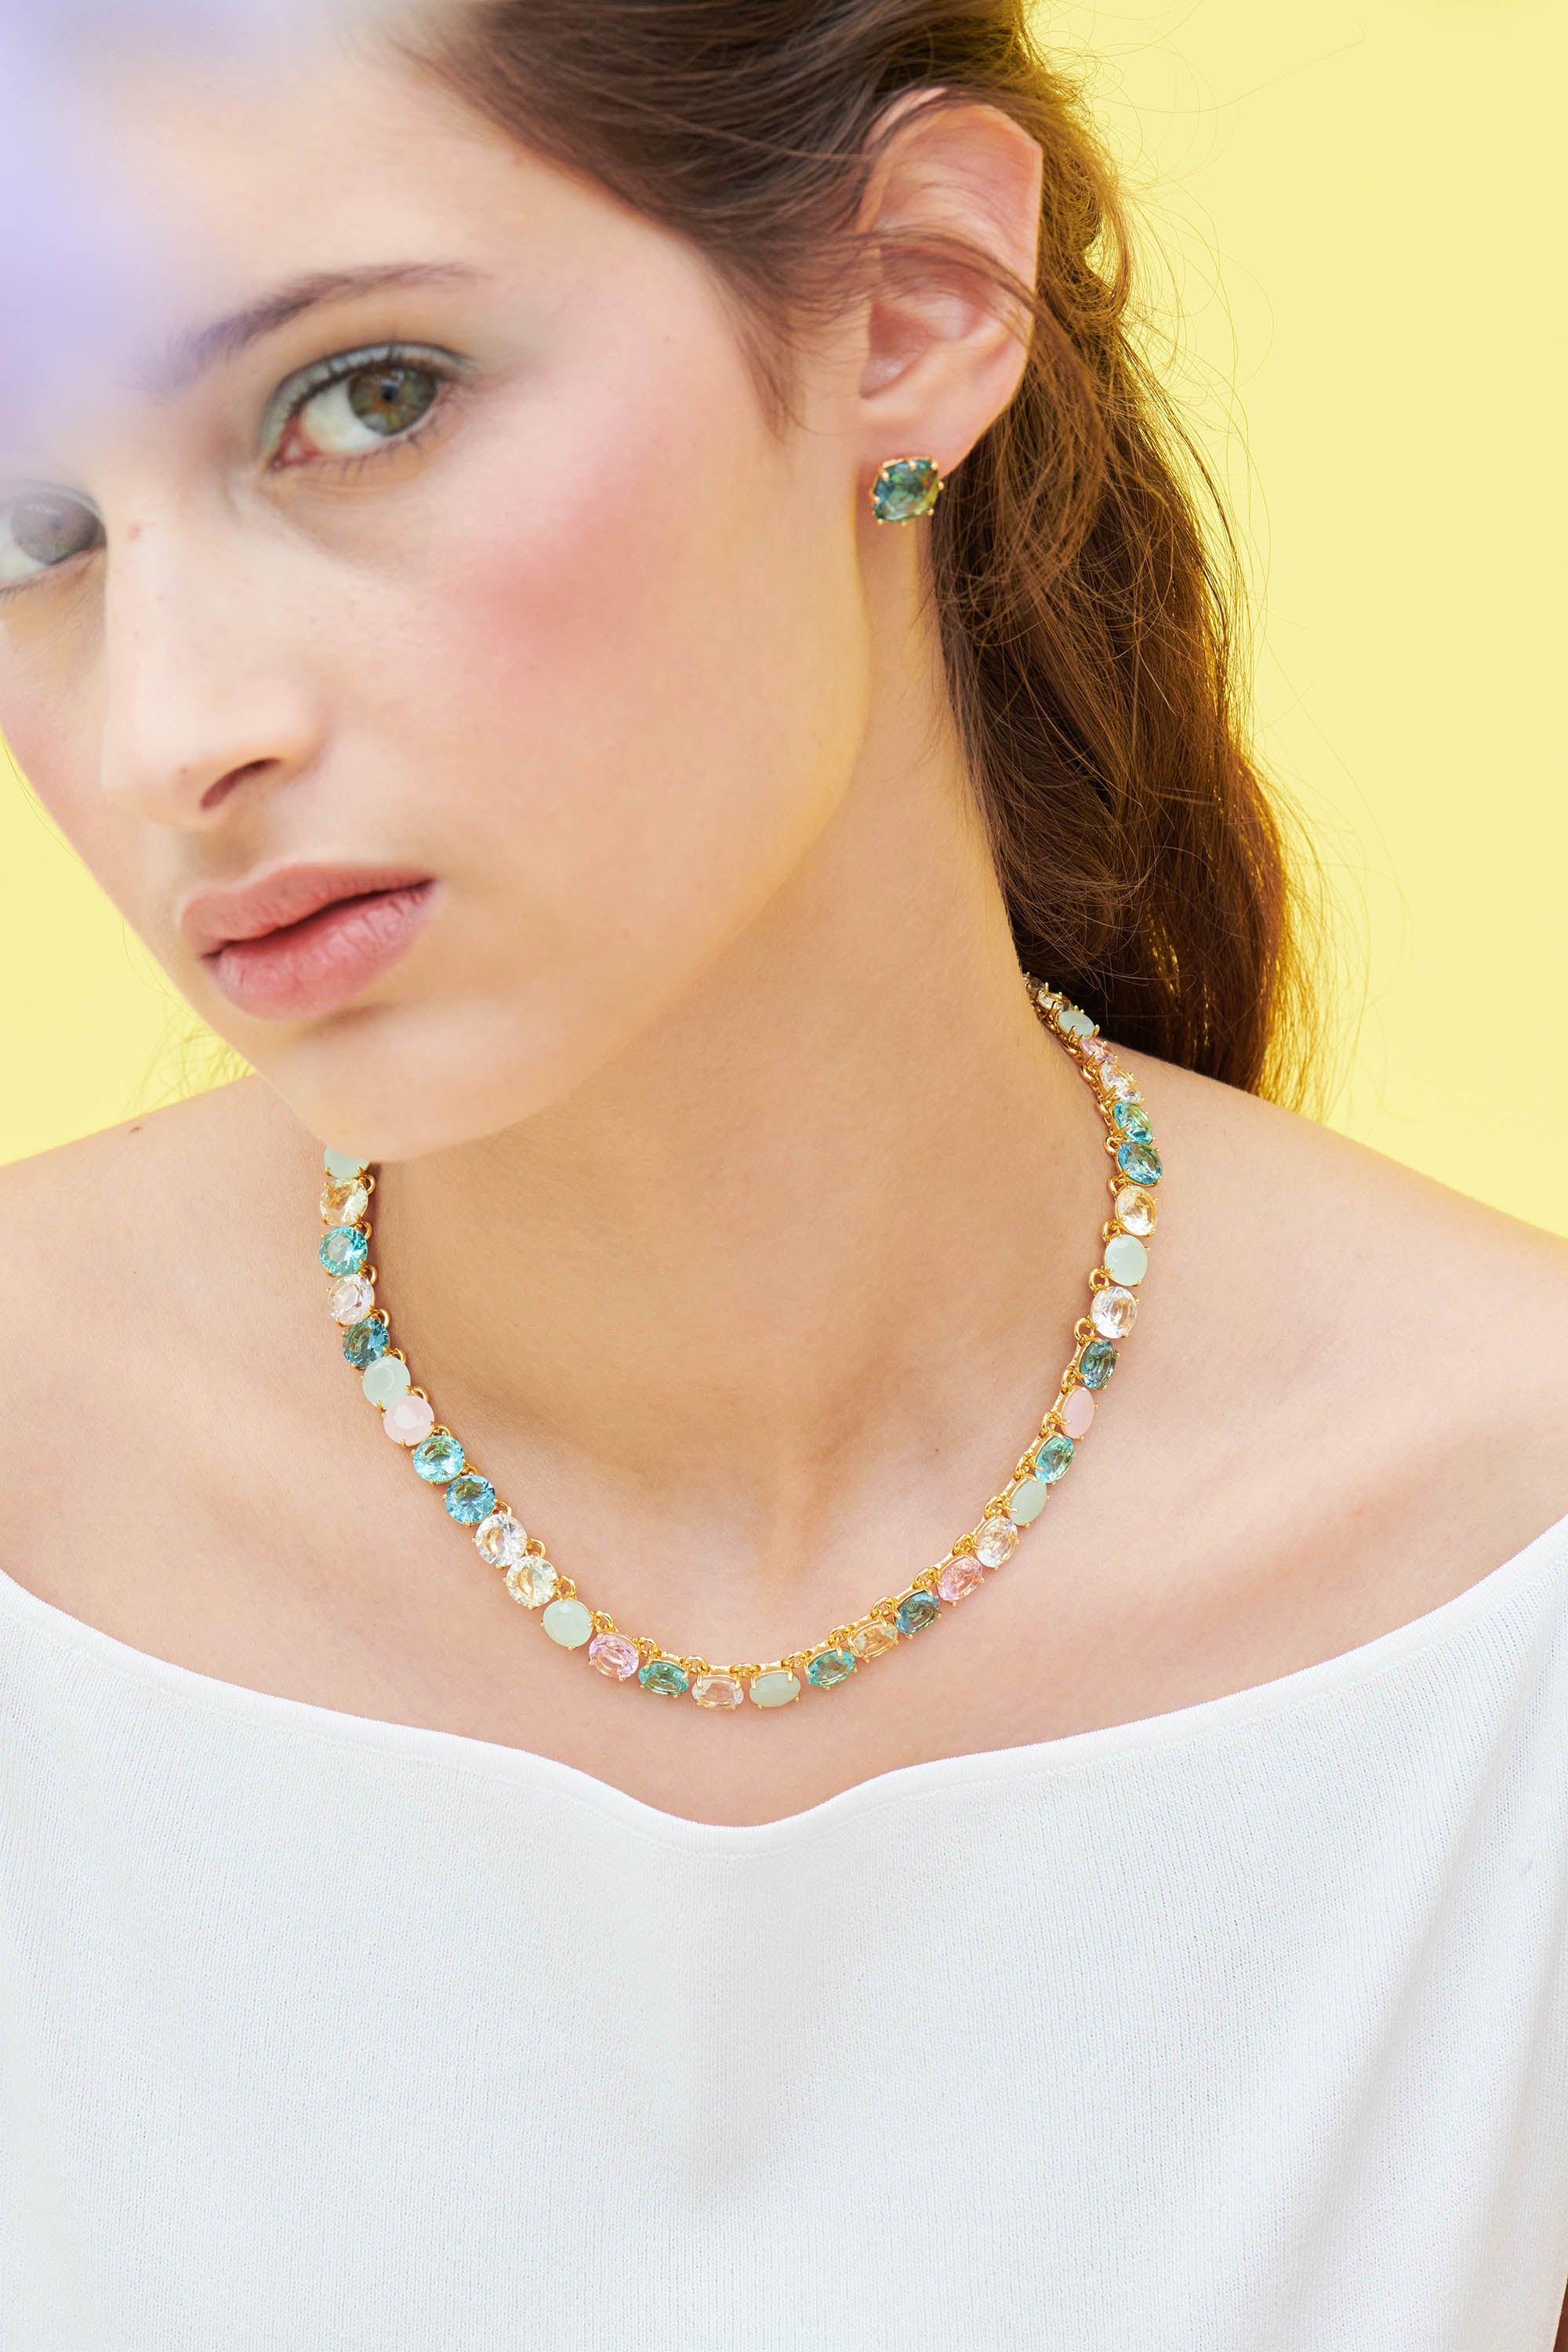 La Diamantine Acqua Azzura Round Stones Choker Necklace